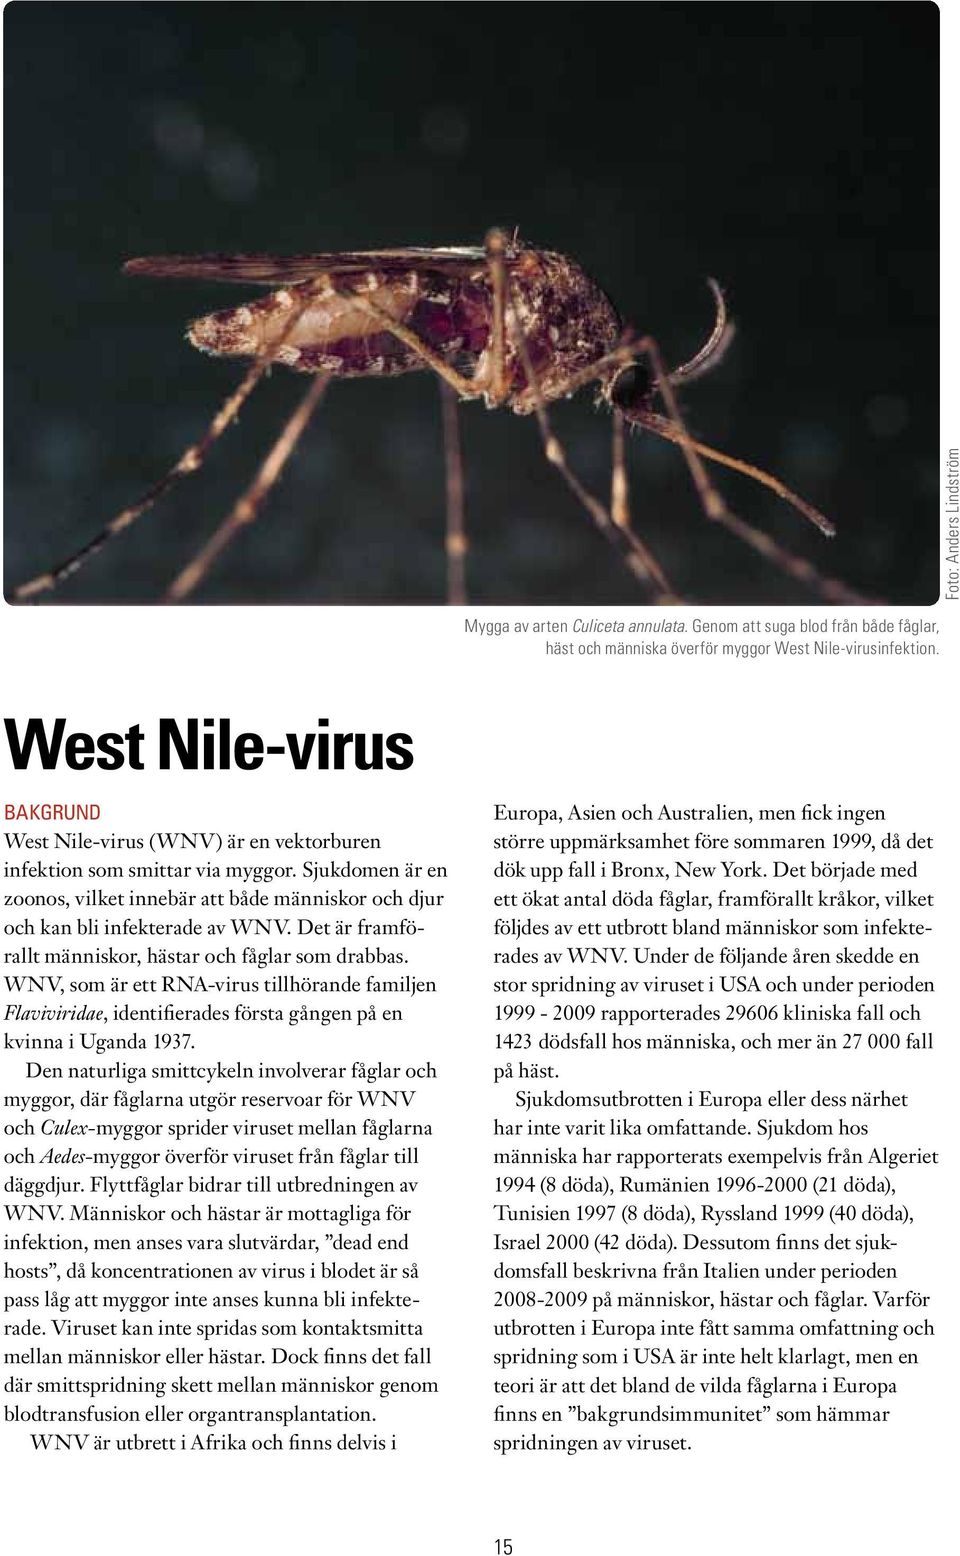 Det är framförallt människor, hästar och fåglar som drabbas. WNV, som är ett RNA-virus tillhörande familjen Flaviviridae, identifierades första gången på en kvinna i Uganda 1937.